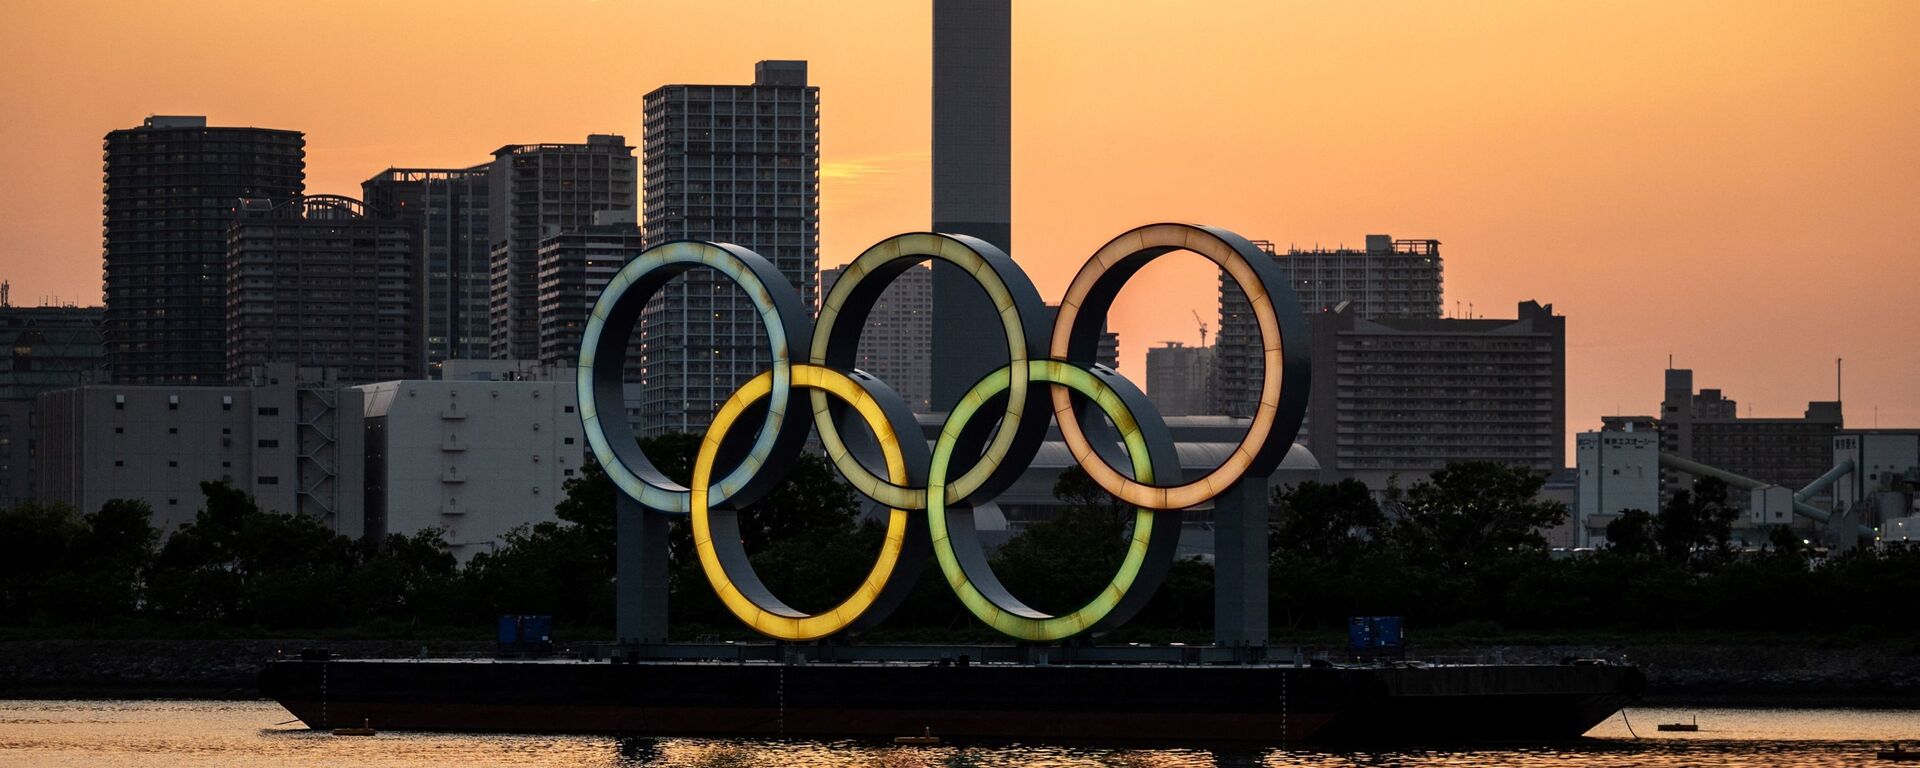 Олимпийские кольца зажжены на набережной Одайбы в Токио 20 апреля 2021 года  - Sputnik Грузия, 1920, 22.04.2021